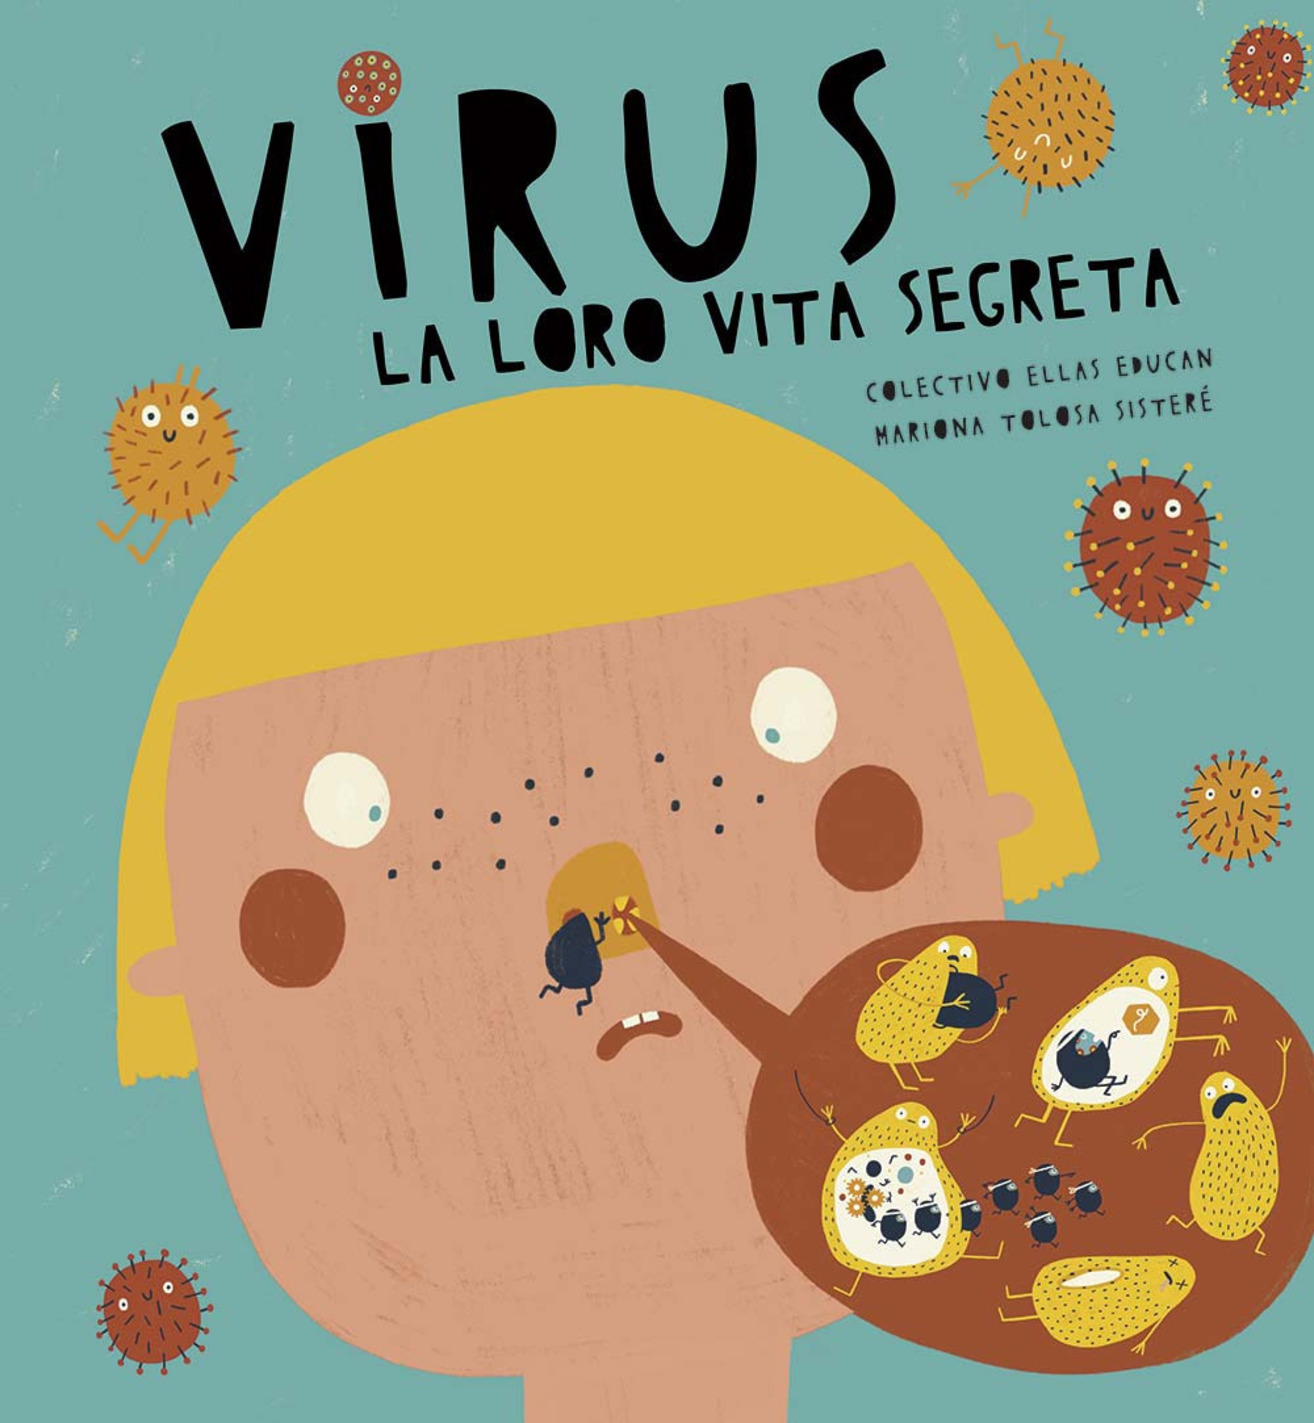 Virus. La loro Vita segreta